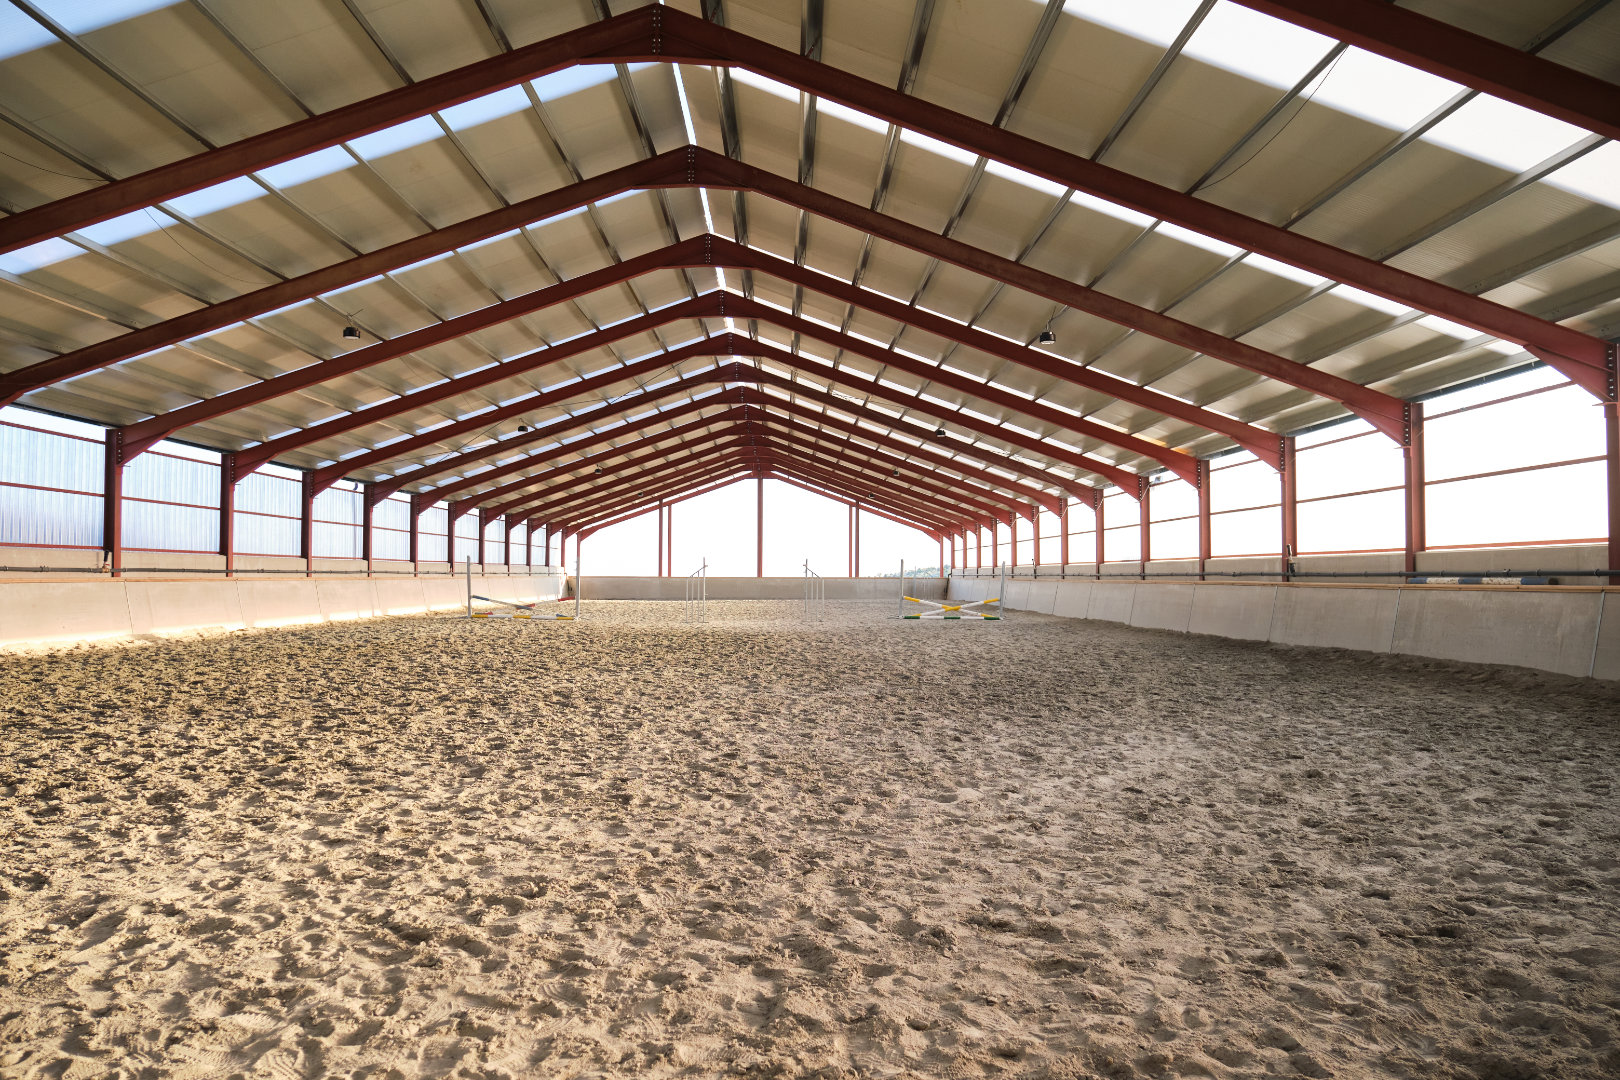 Hall d'équitation vide avec des barrières de saut.